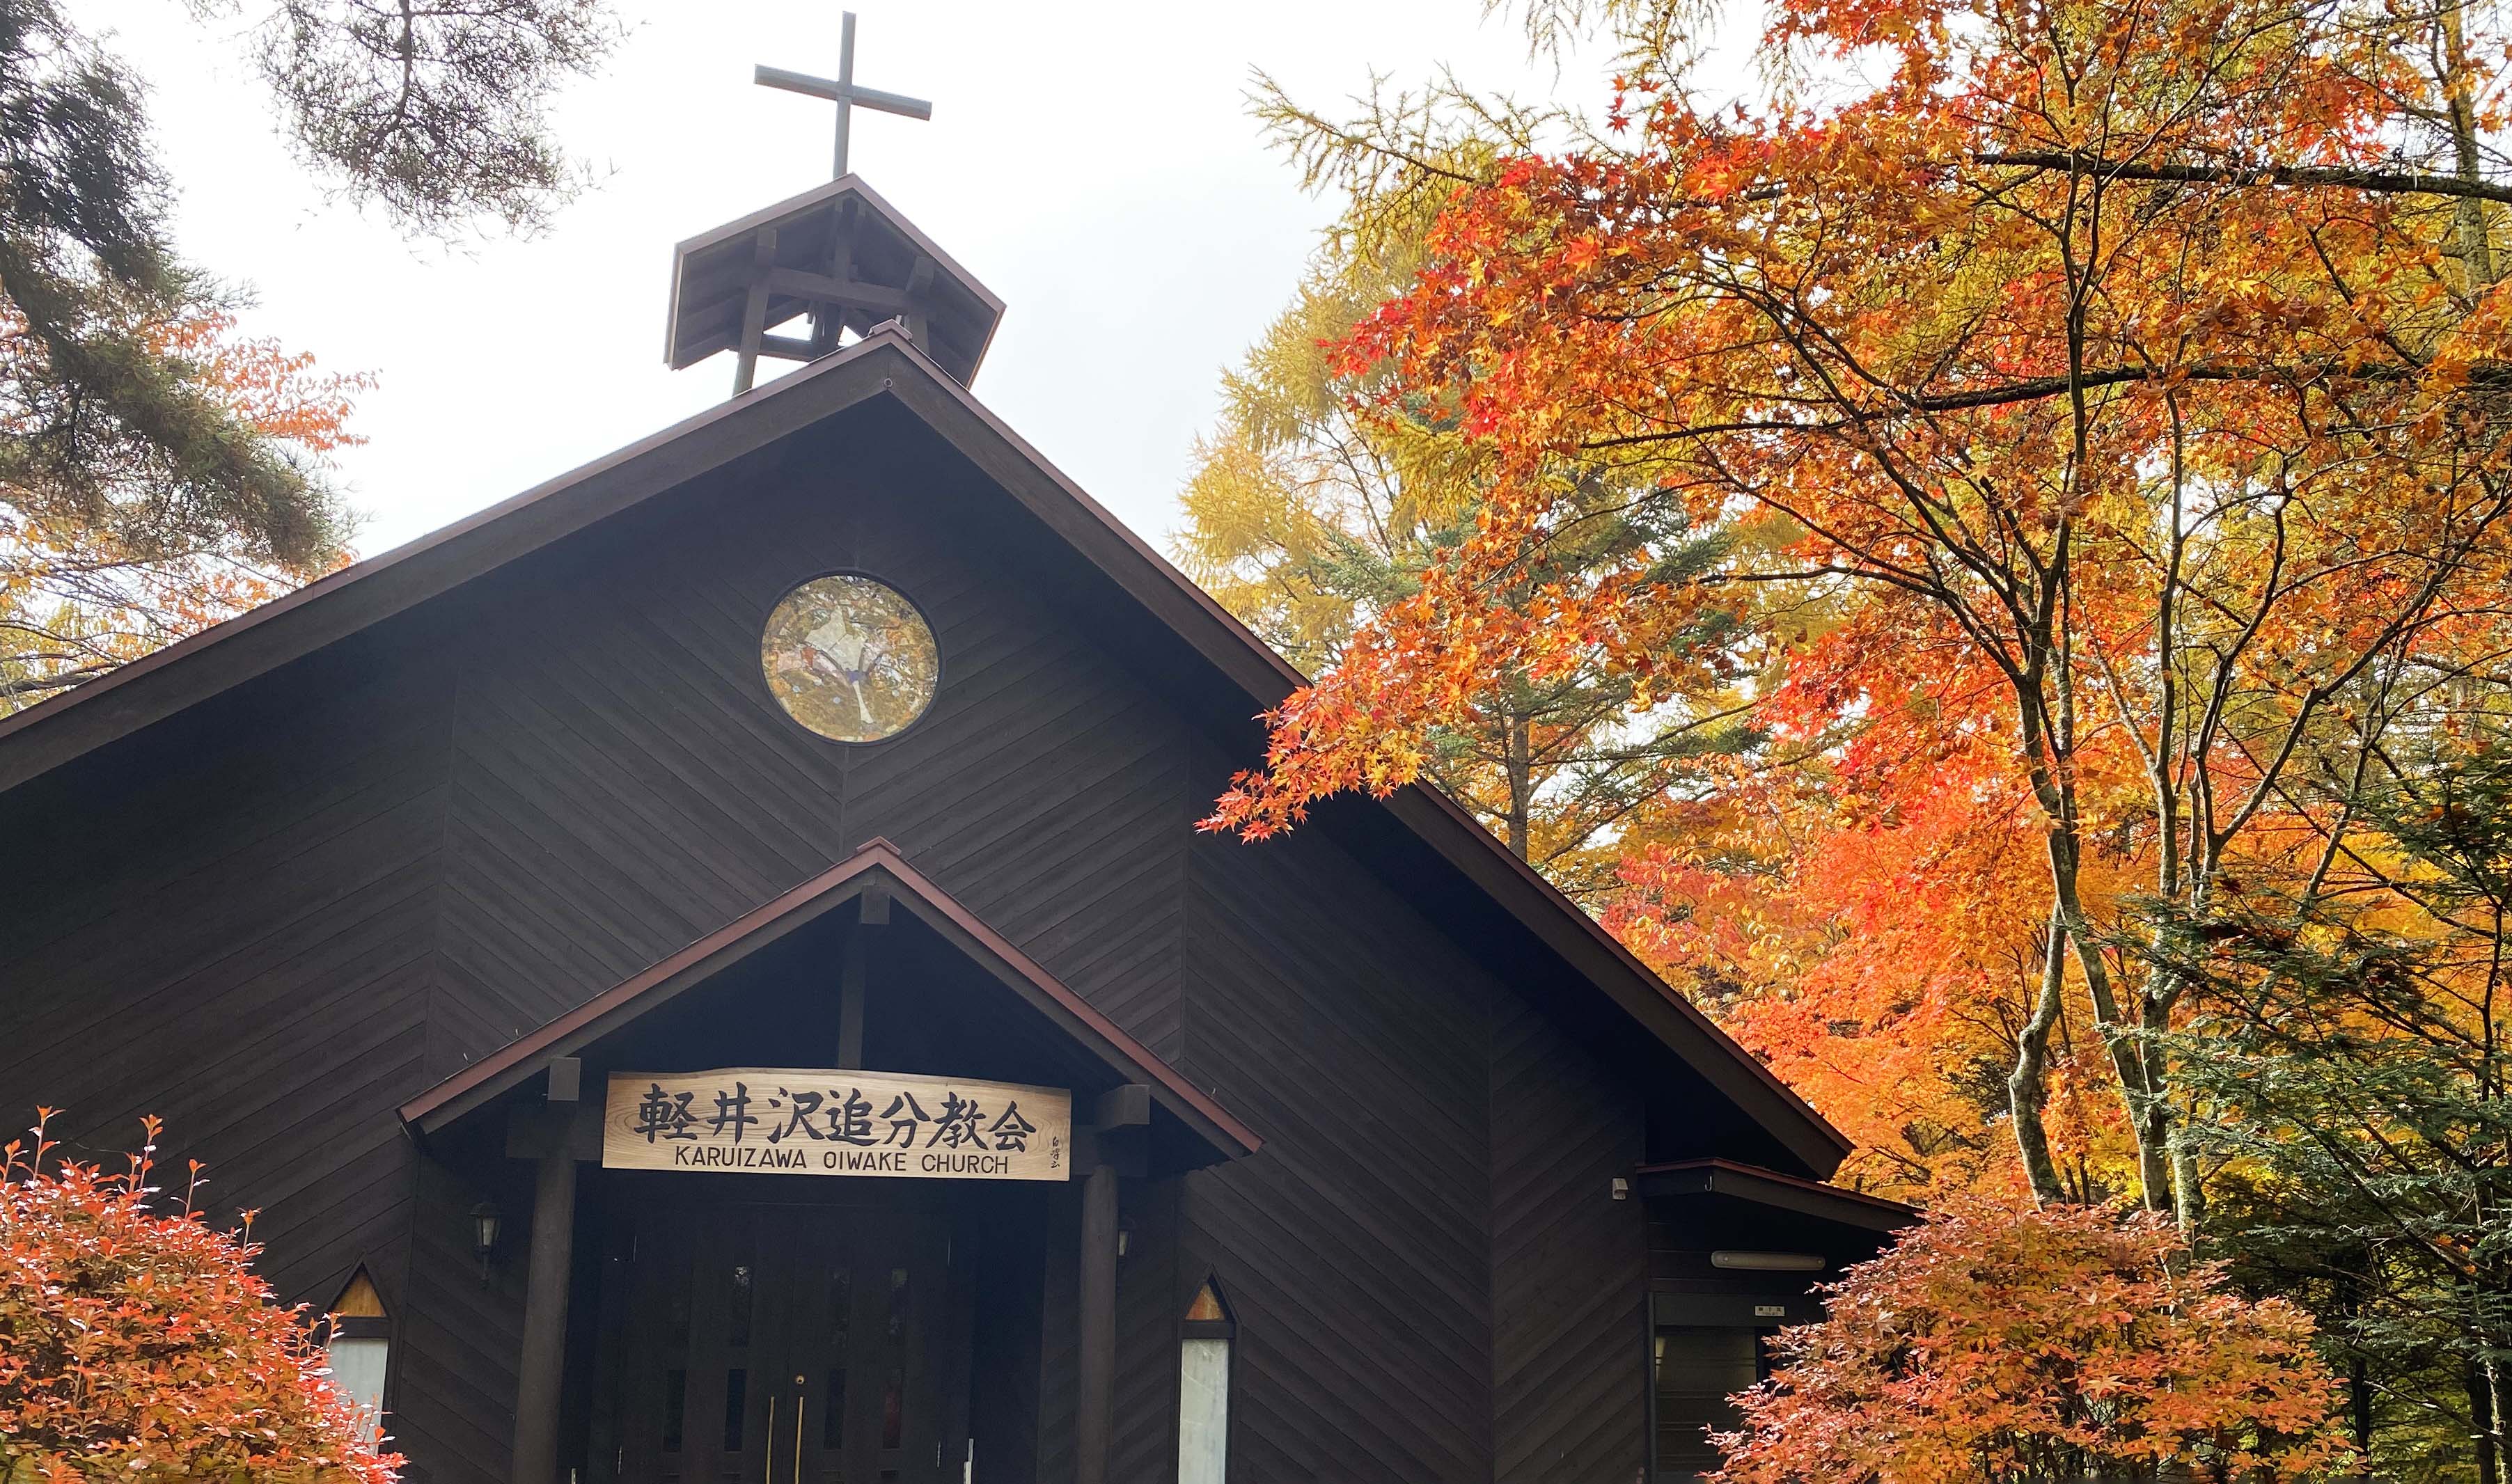 紅葉が美しい秋の教会の様子